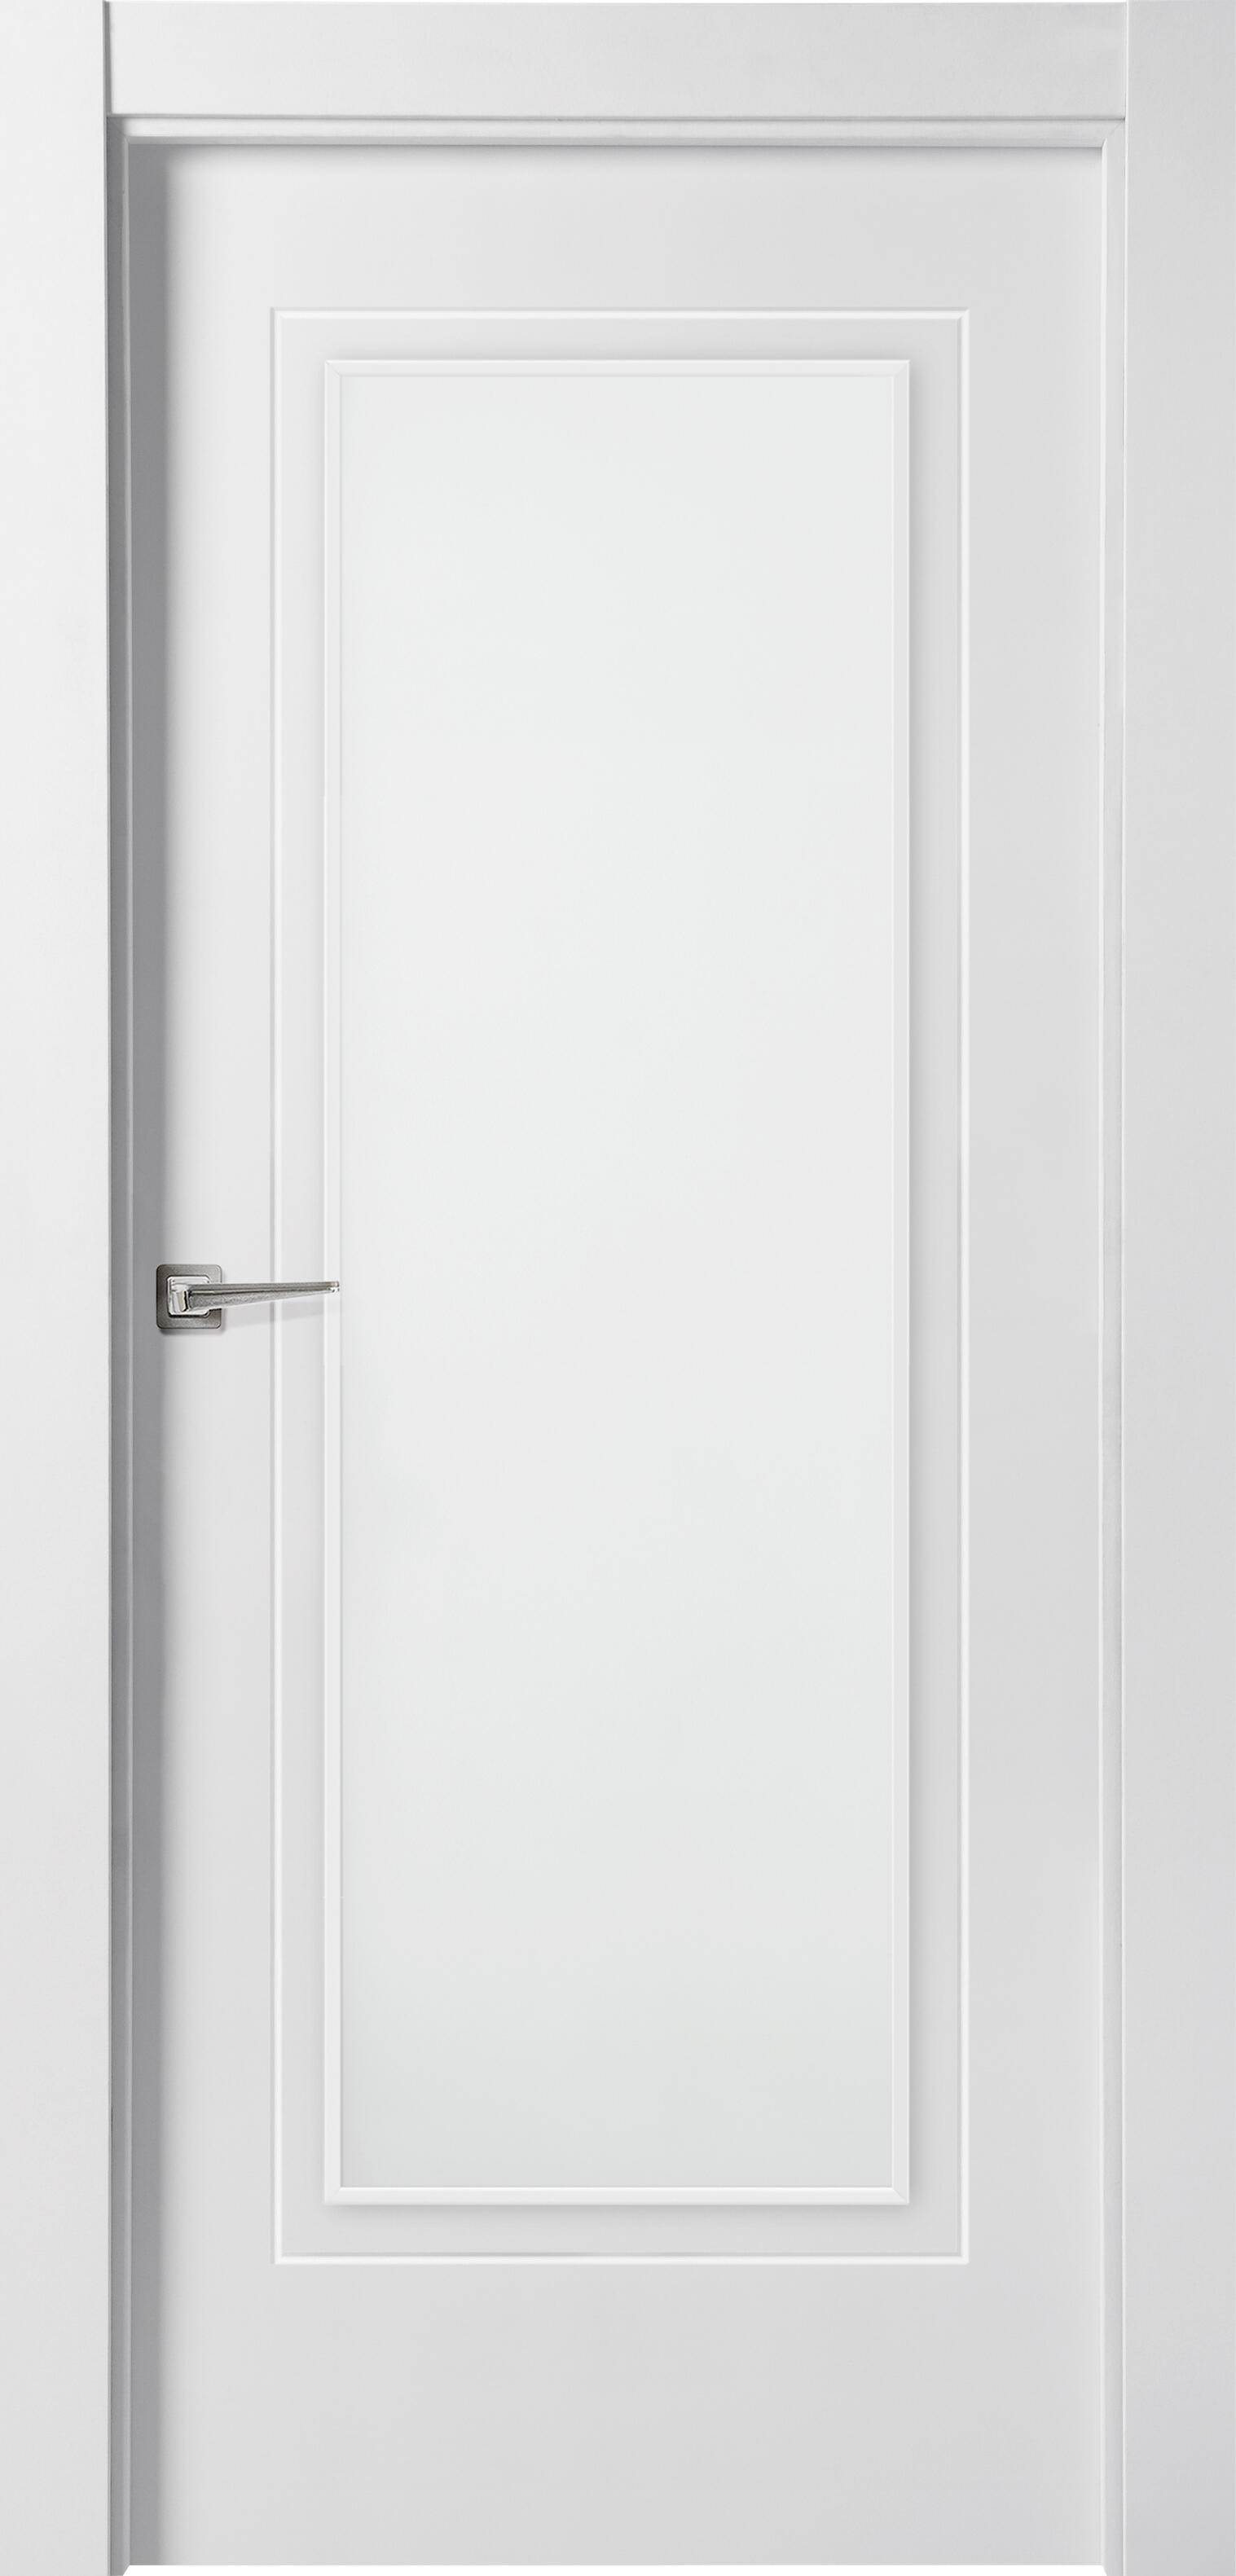 Puerta miramar blanco de apertura derecha con cristal 9x72.5 cm